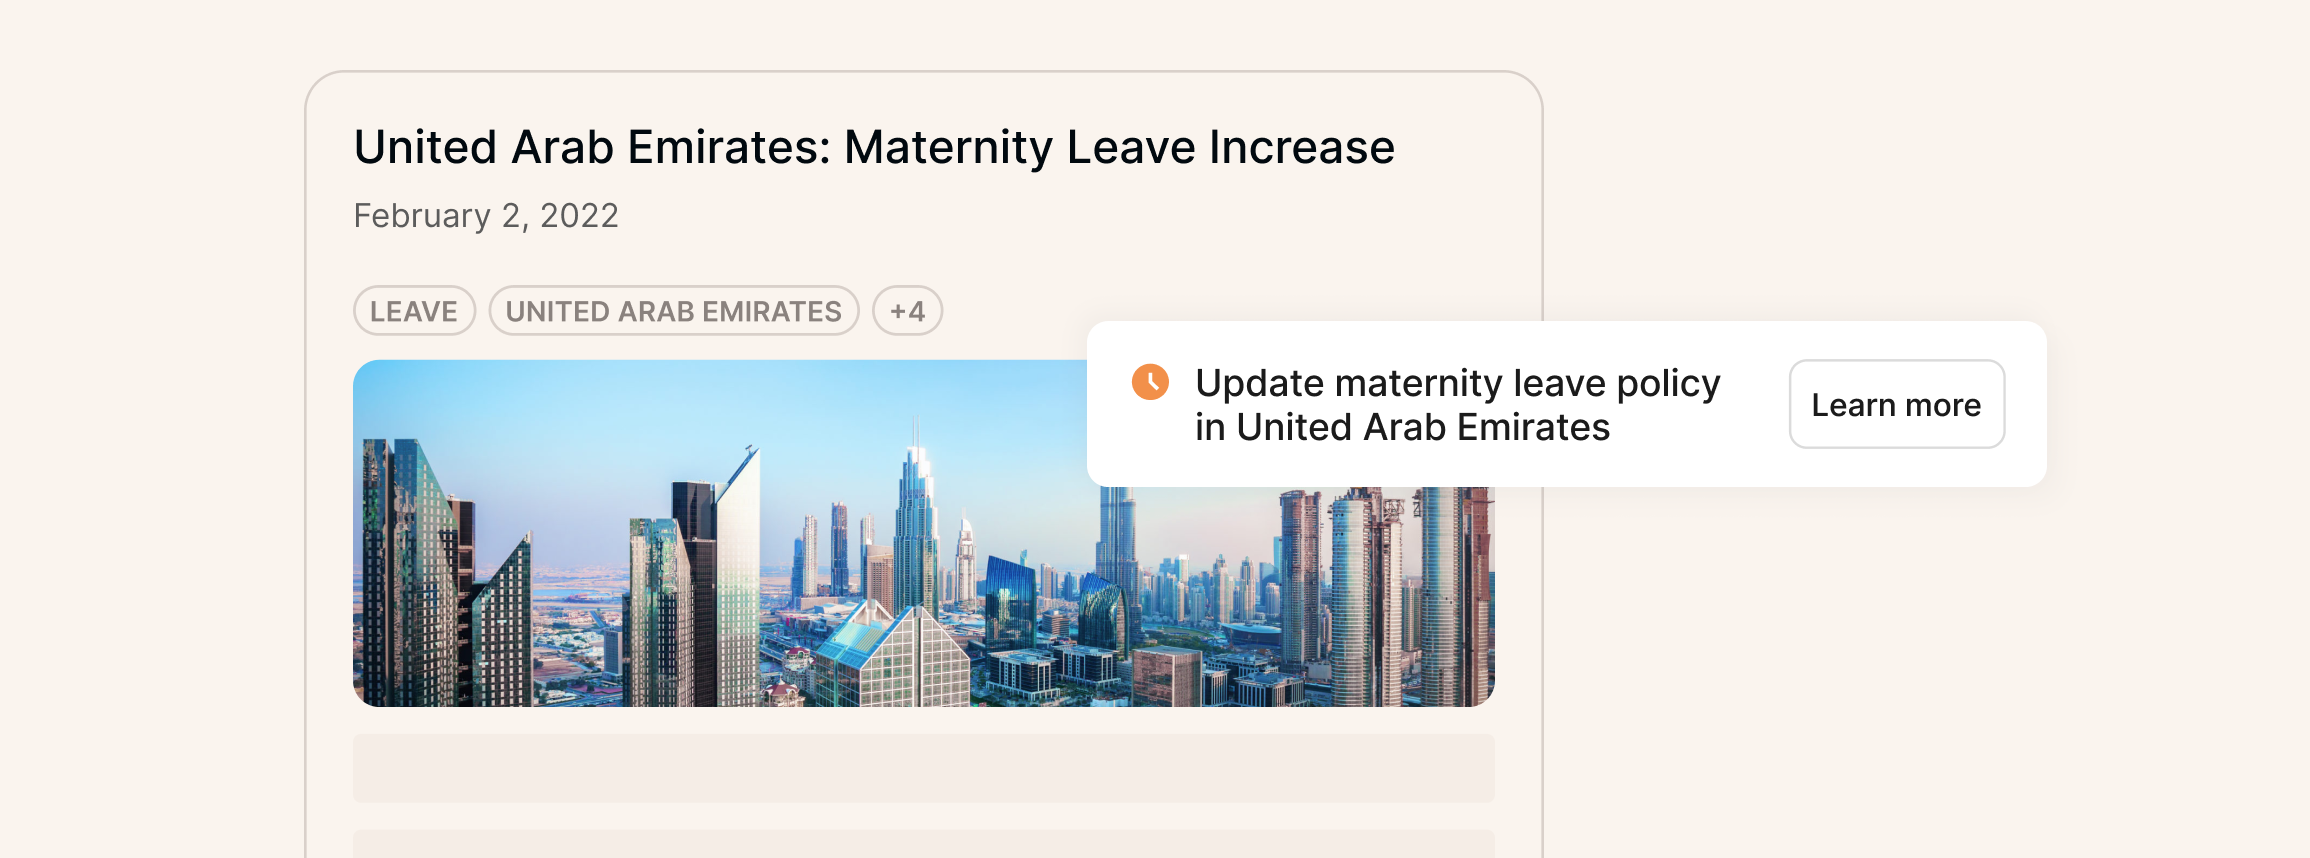 Imagen para representar la política de licencia de maternidad en los Emiratos Arabes